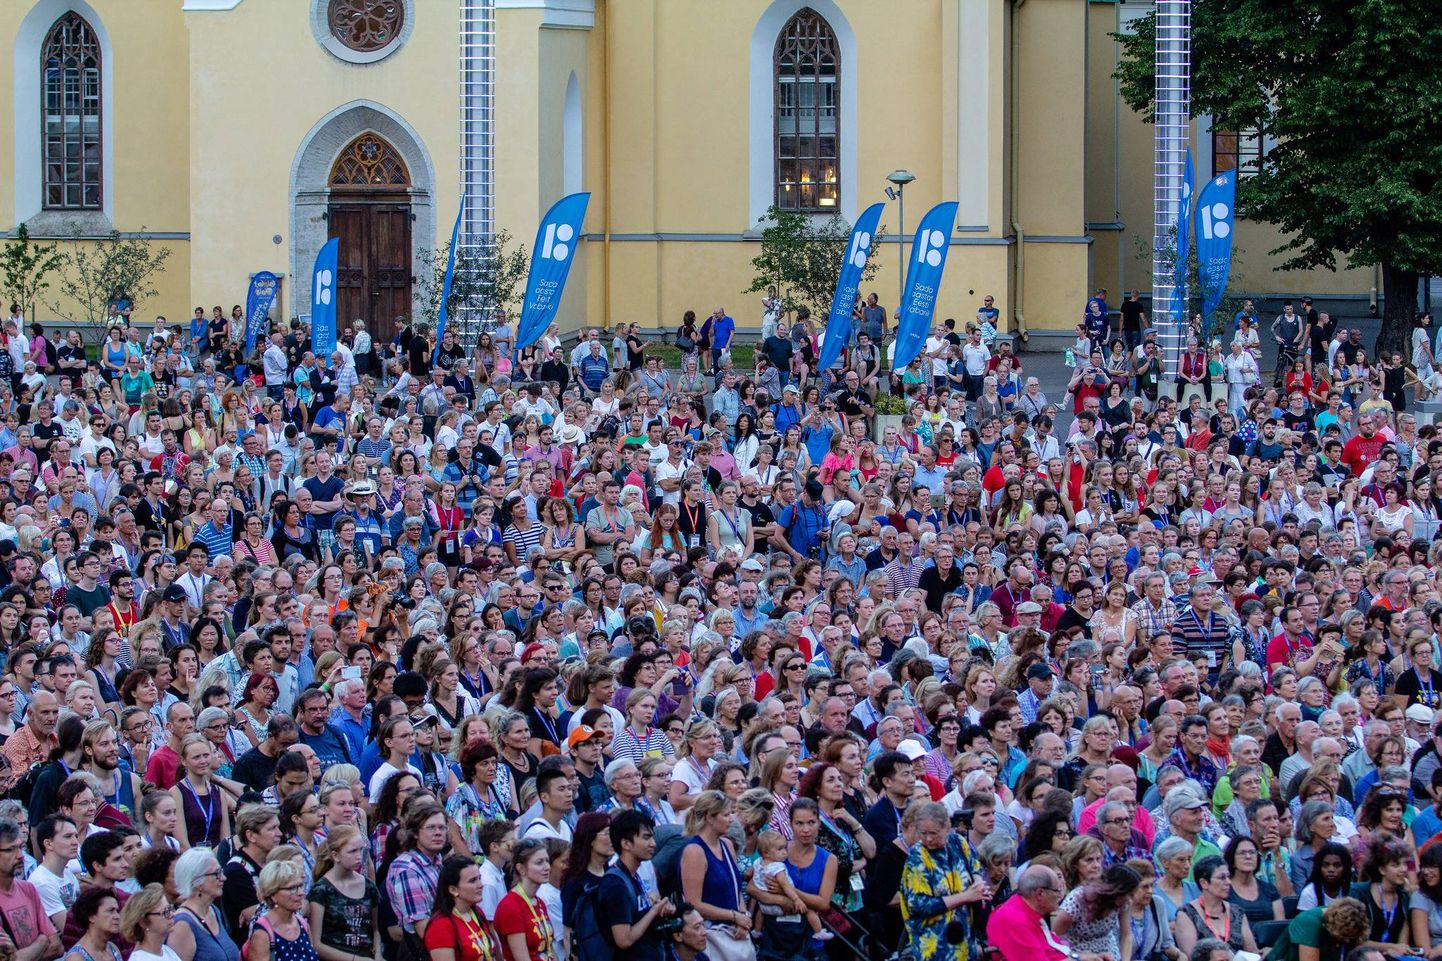 Europa Cantat XX Tallinn 2018 avakontsert 28. juulil: kohal oli 4000 koorilaulu sõpra. Kontserte ja muud põnevat toimub kuni 5. augustini. Programm: https://ectallinn2018.ee/et/programm/